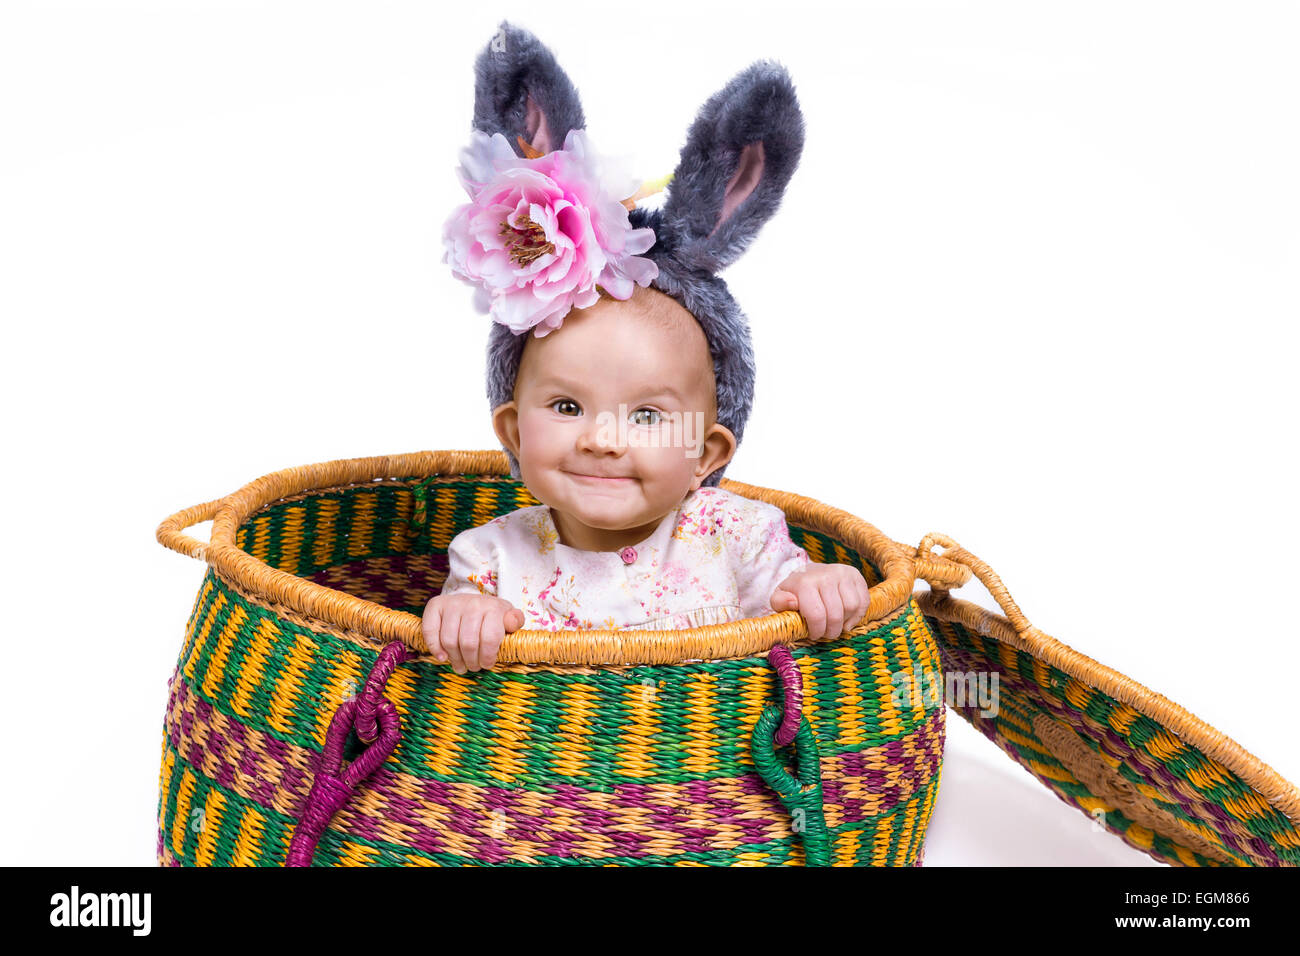 Funny baby indossando orecchie di coniglietto seduto in un cestello Foto Stock